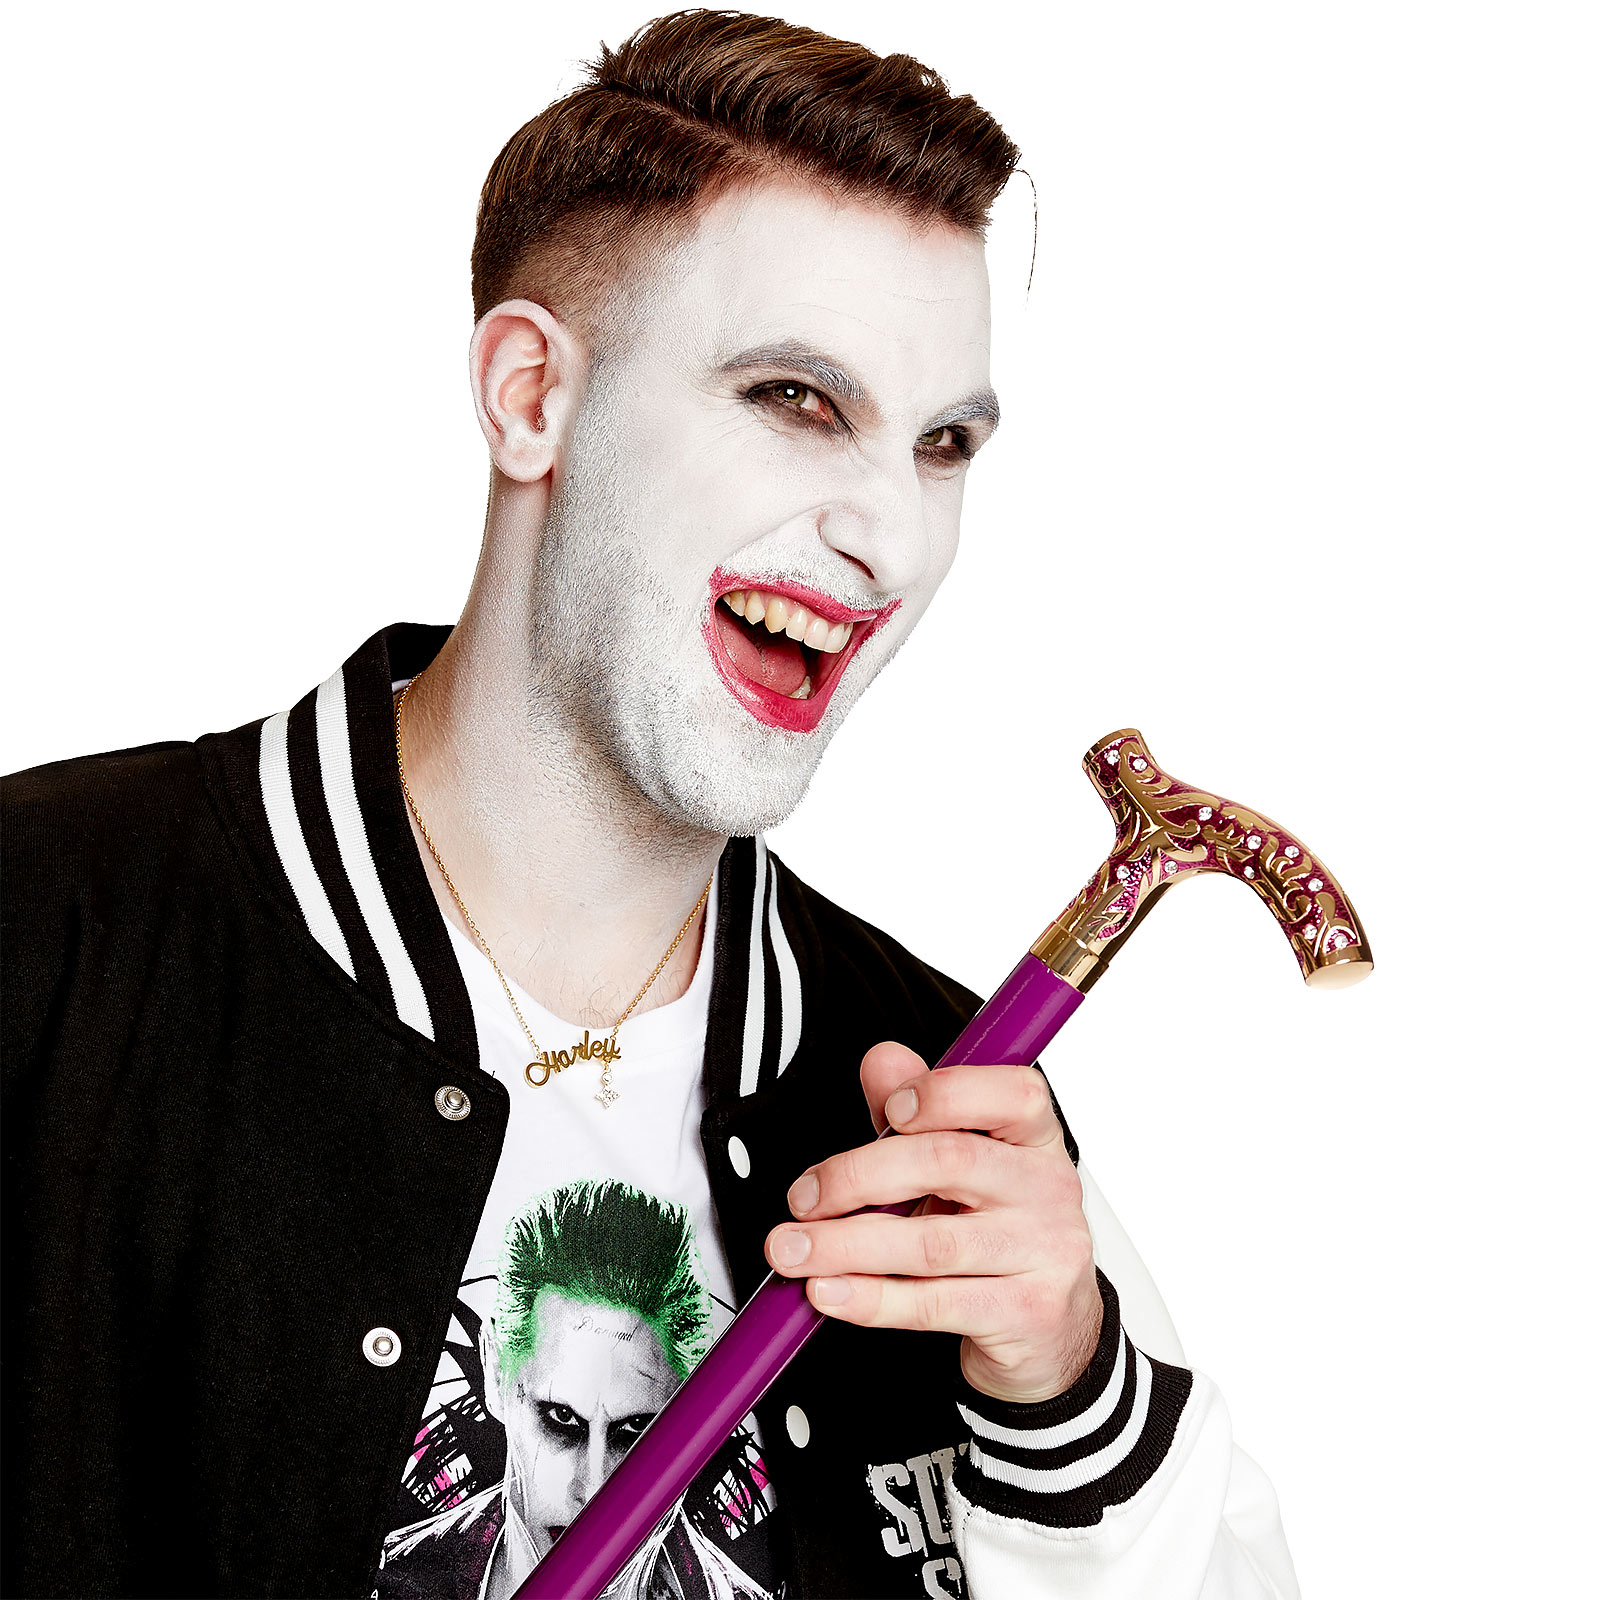 Joker wandelstok - Suicide Squad